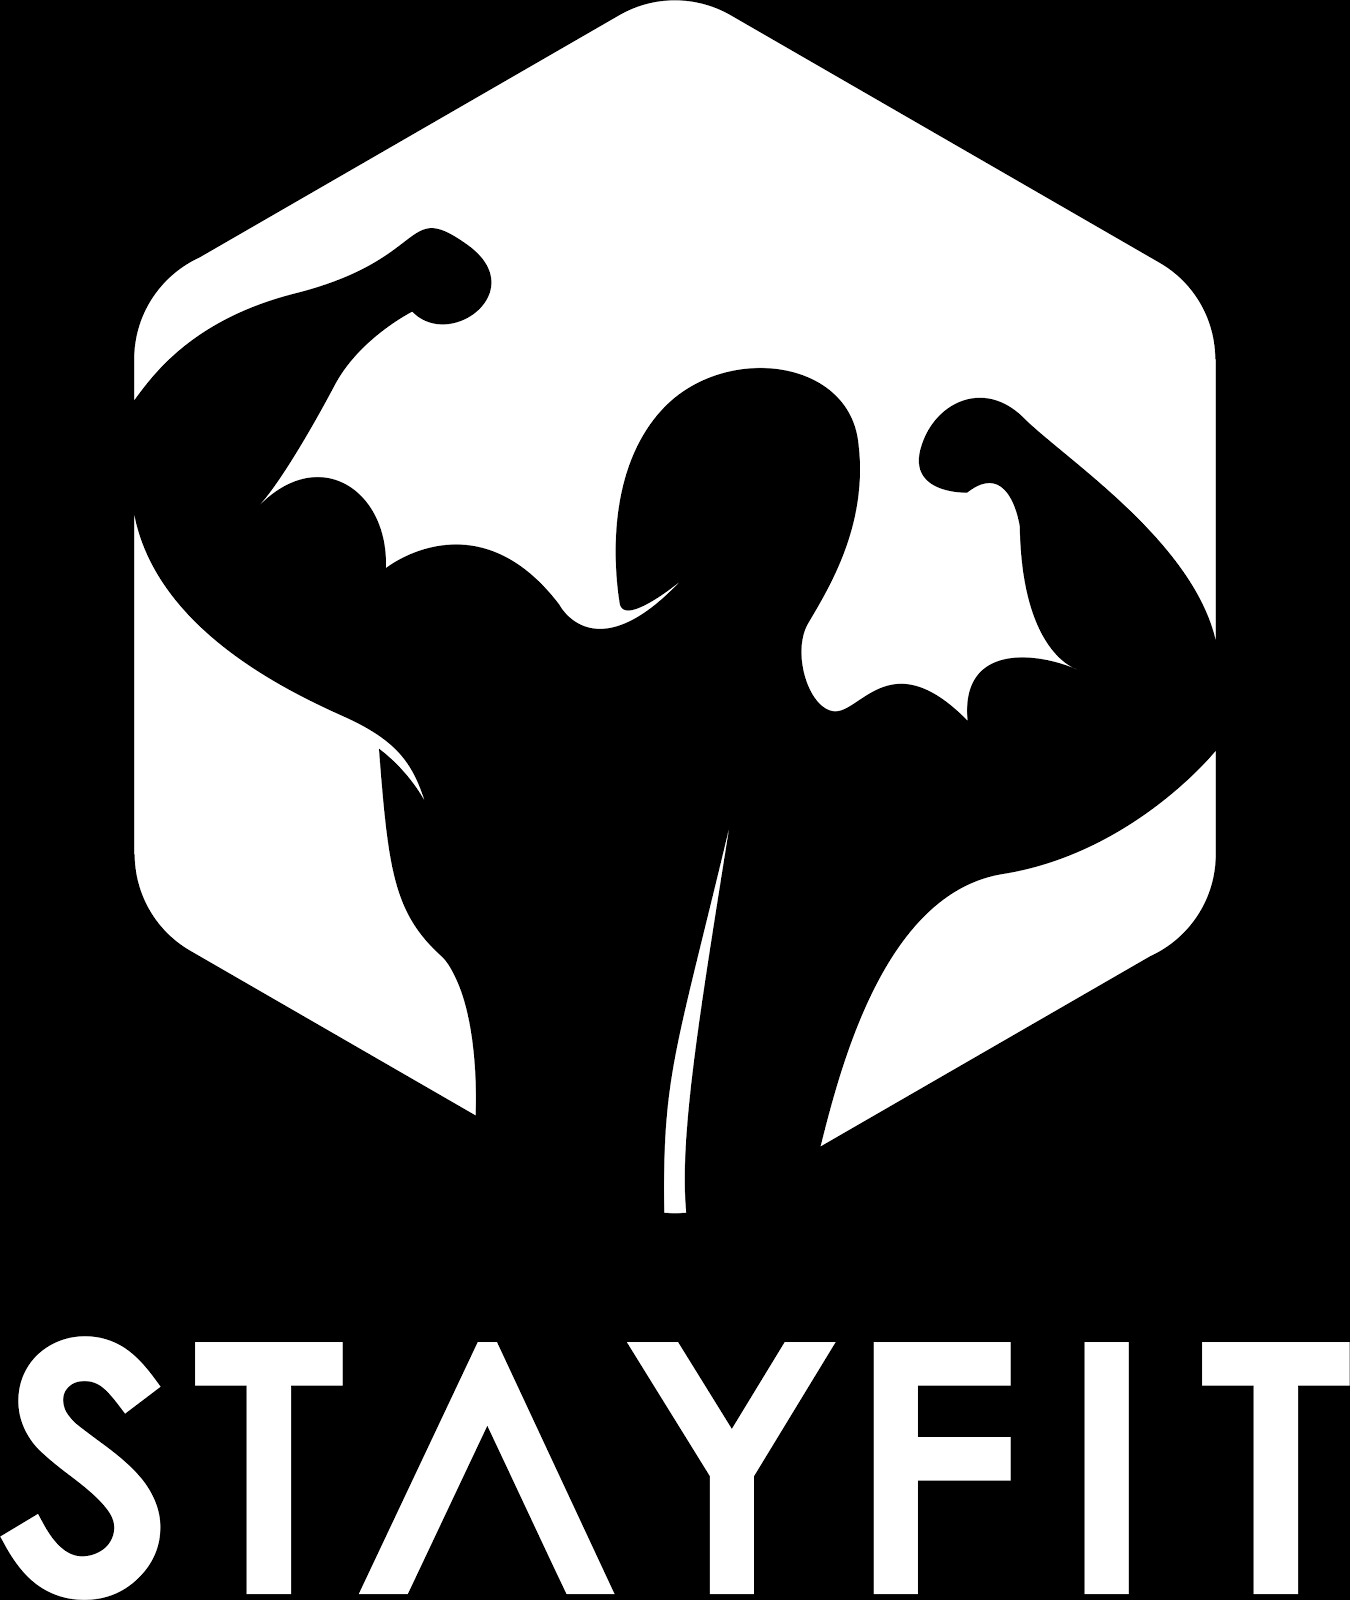 Trainingsplan Oberkörper-Unterkörper Split Unser StayFit Trainingsplan im Oberkörper-Unterkörper Split wird dir helfen Deine Kraftleistung, dein Aussehen und dein Wohlbefinden zu steigern.